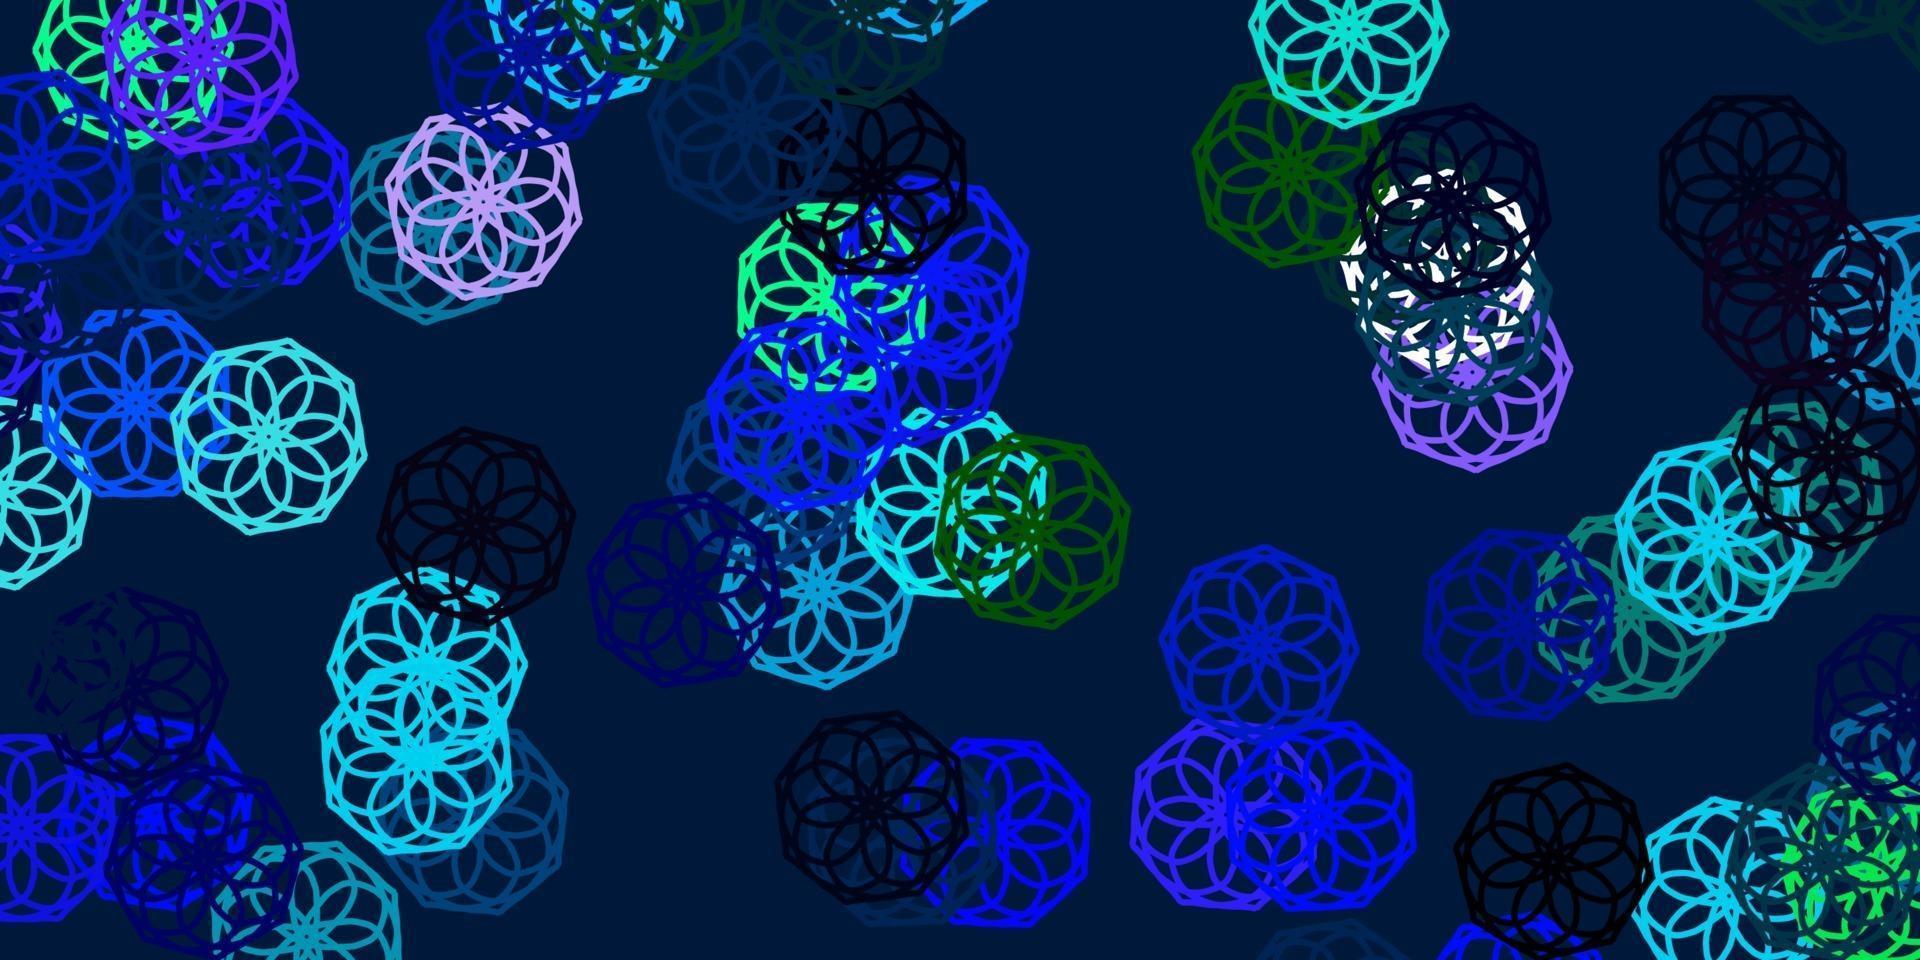 motif de doodle vecteur bleu clair, vert avec des fleurs